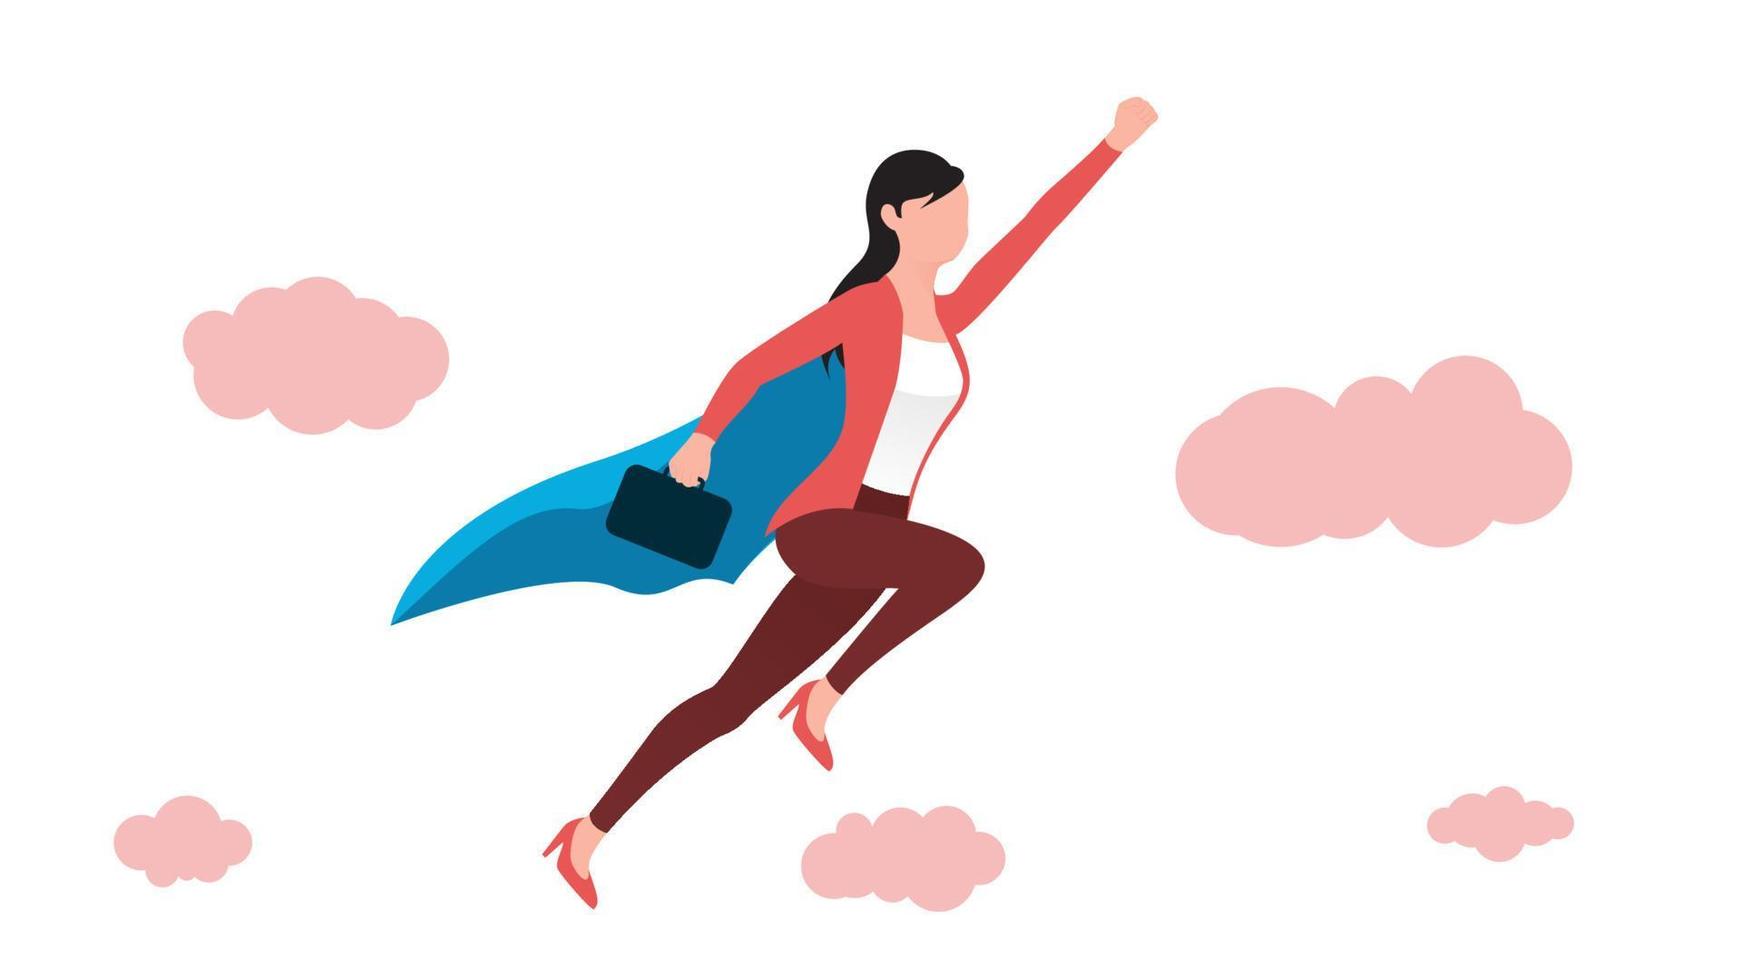 mujer volando en pose de superhéroe con maletín, ilustración de vector de carácter empresarial sobre fondo blanco.